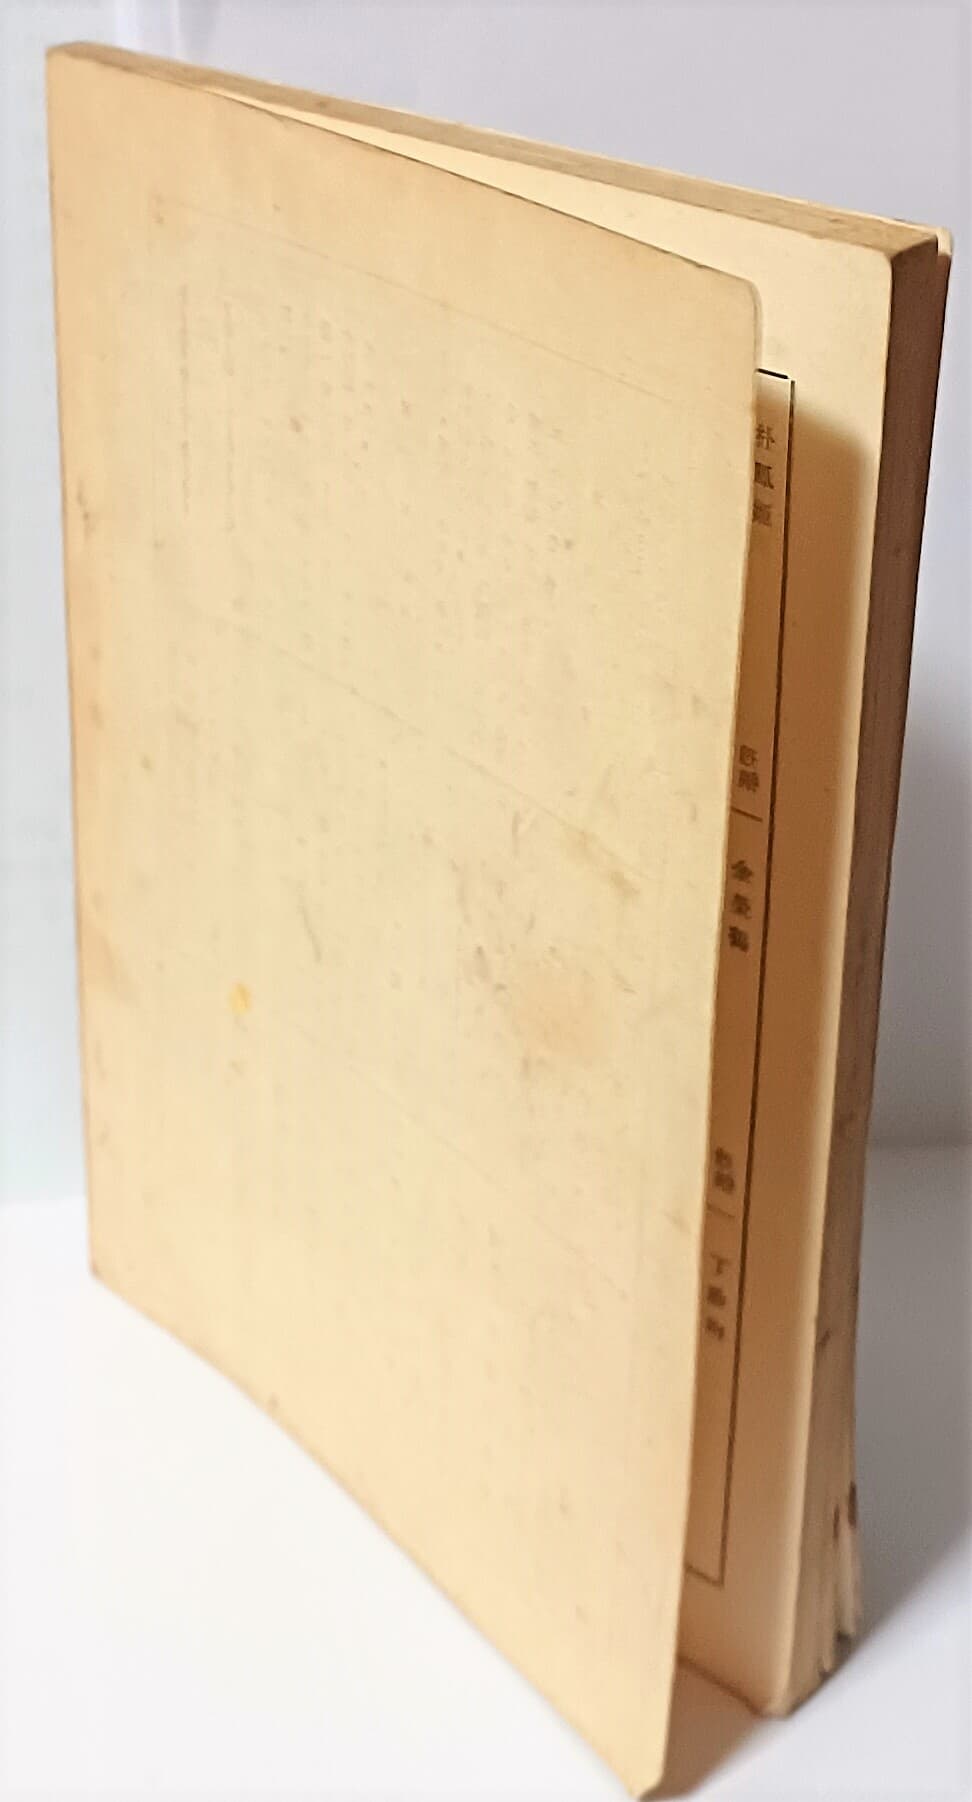 국어국문학연구(이화여자대학교) -1958년 초판,창간호(144쪽)-절판된 귀한 창간호-고서,희귀본-